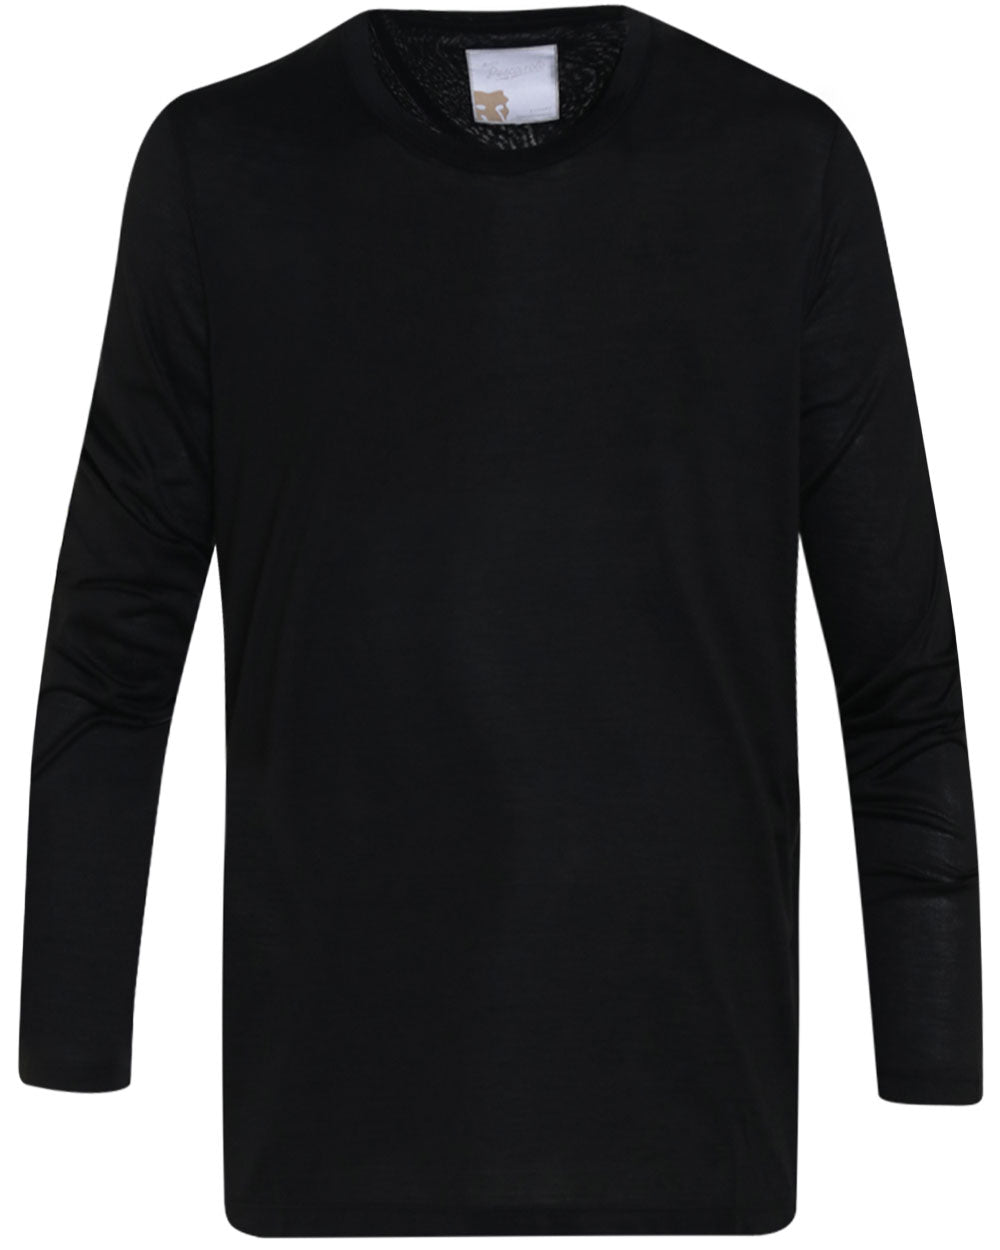 Black Jersey Silk Blend Long Sleeve T-Shirt